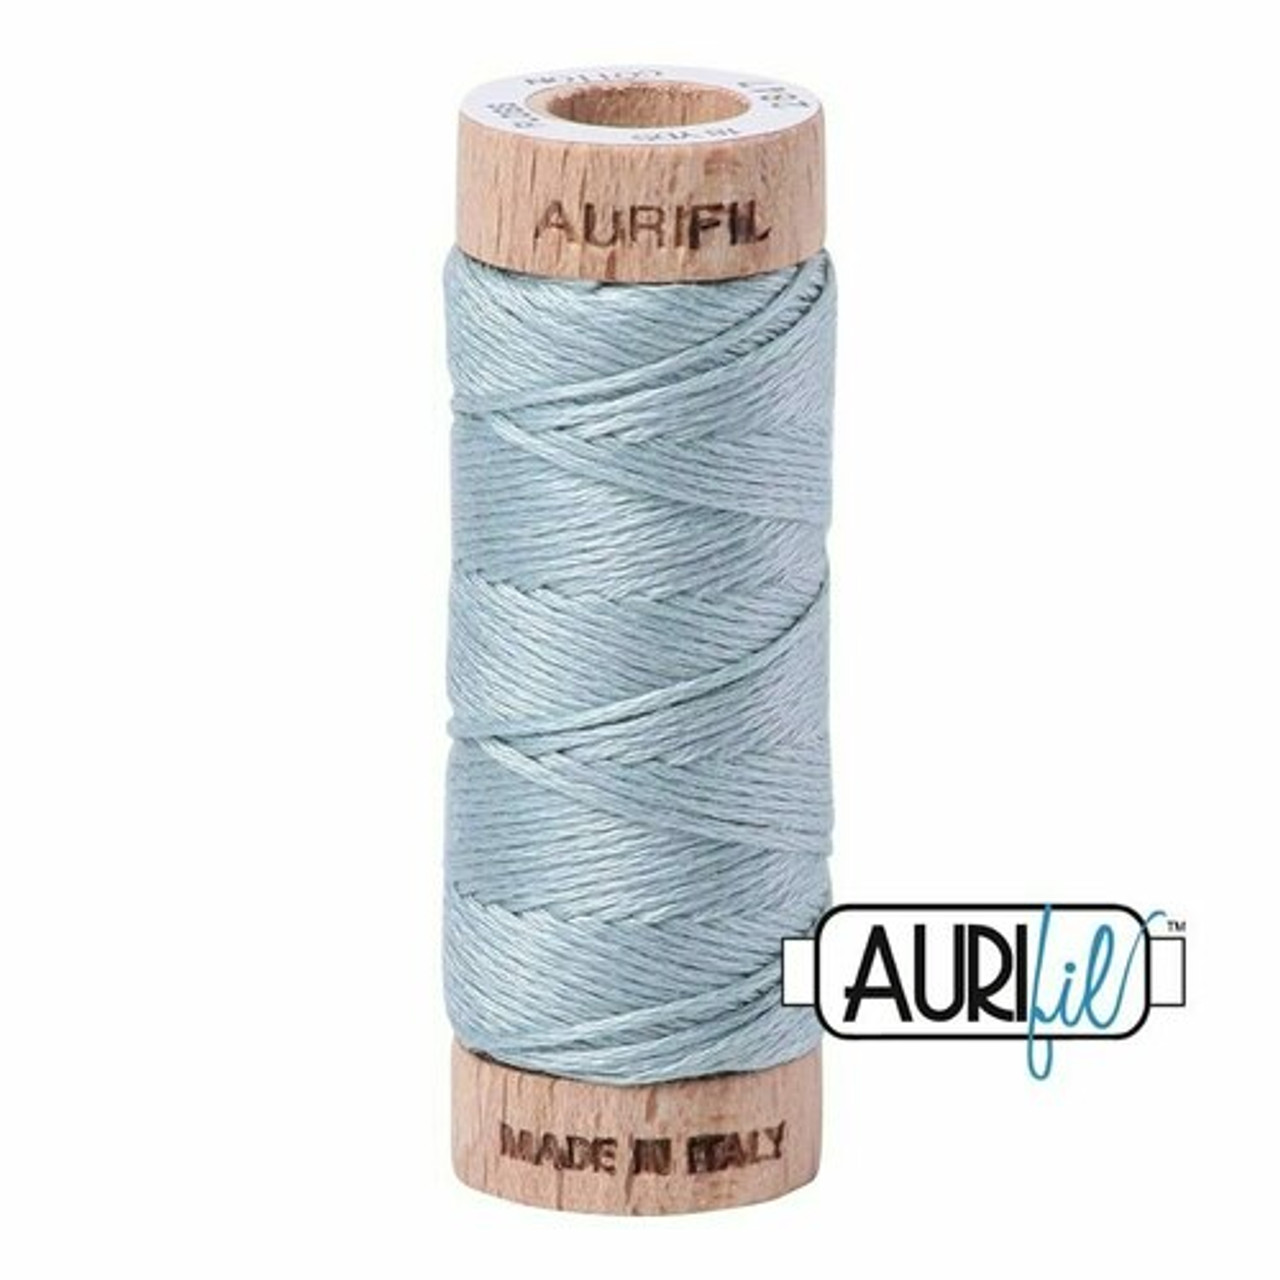 Aurifil 2847 - Bright Grey Blue